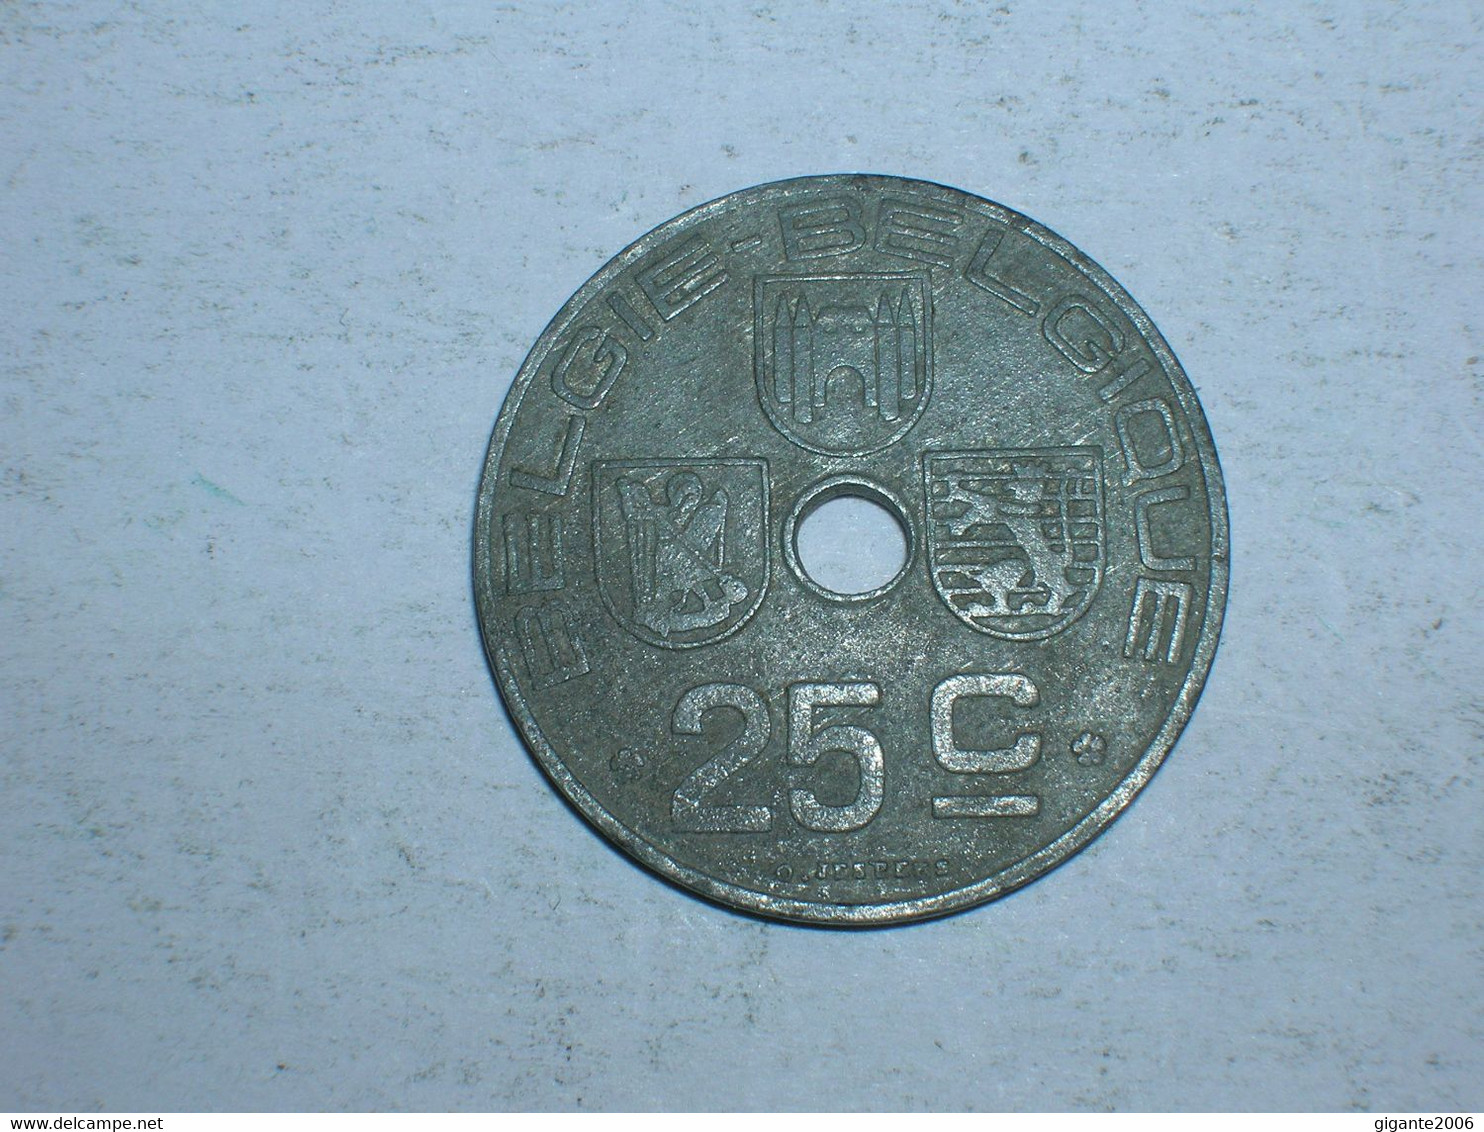 BELGICA 25 CENTIMOS 1944 FL (9722) - 25 Centimos